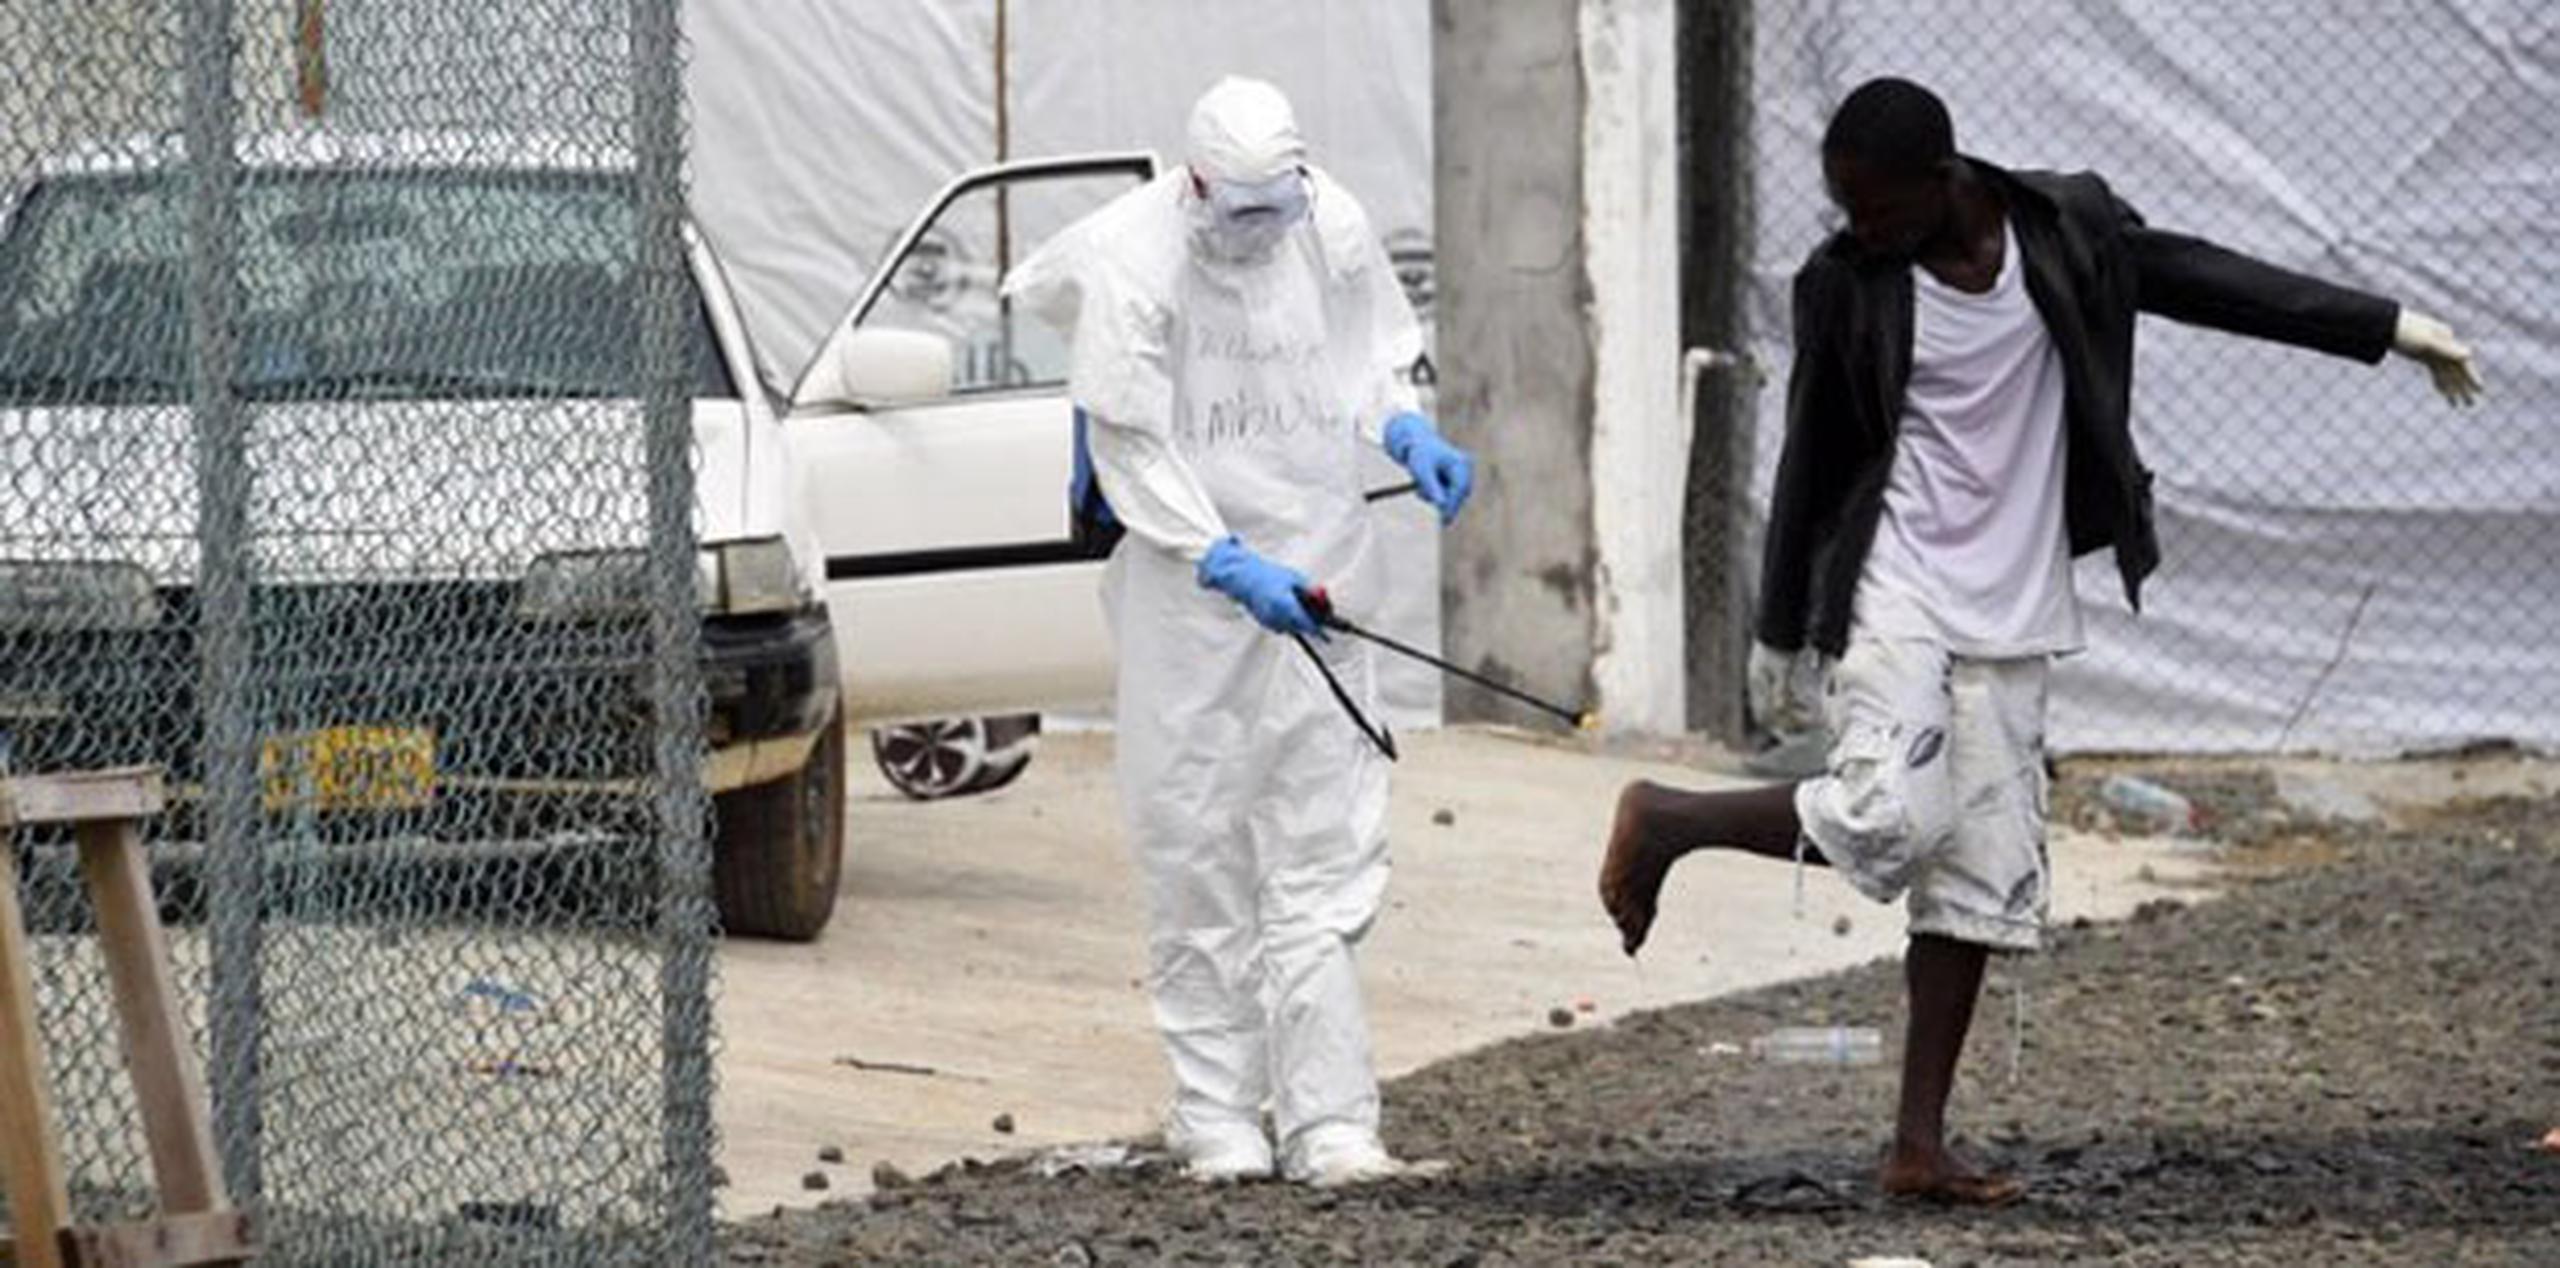 La CDC señala que el cloro y otros desinfectantes usados en hospitales matan al virus. (AFP PHOTO / PASCAL GUYOT)